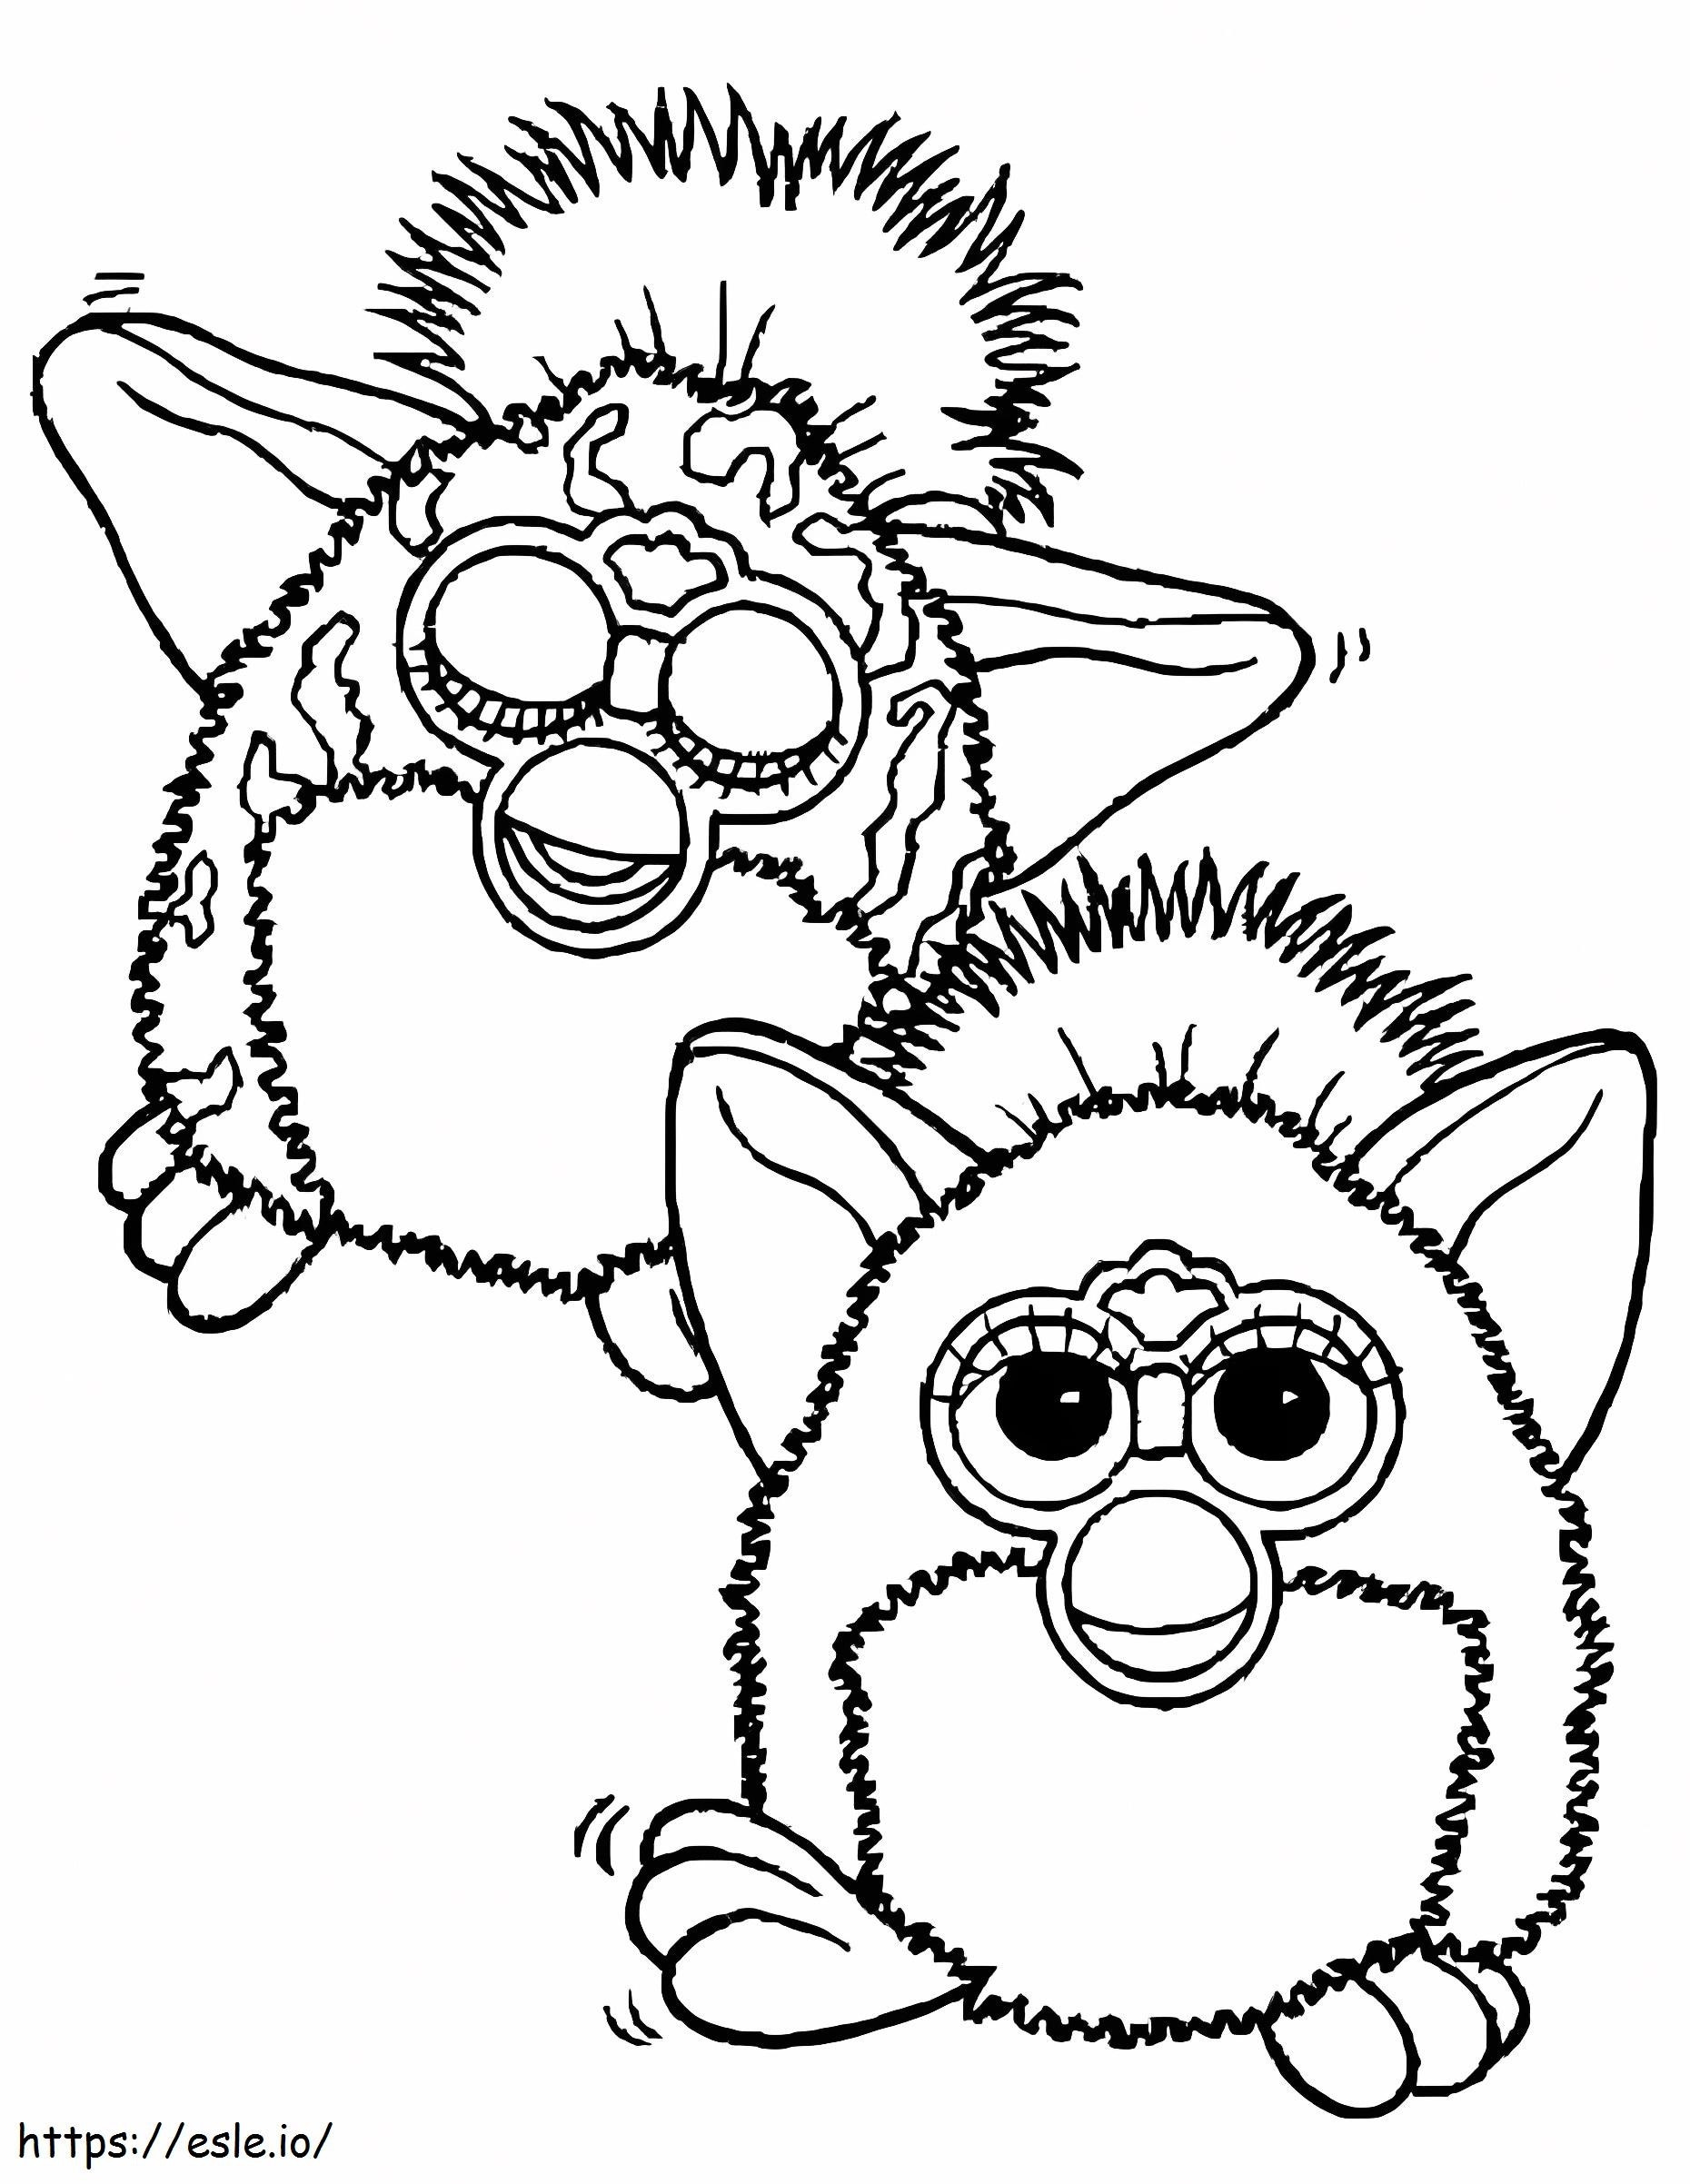 Zwei Furby ausmalbilder